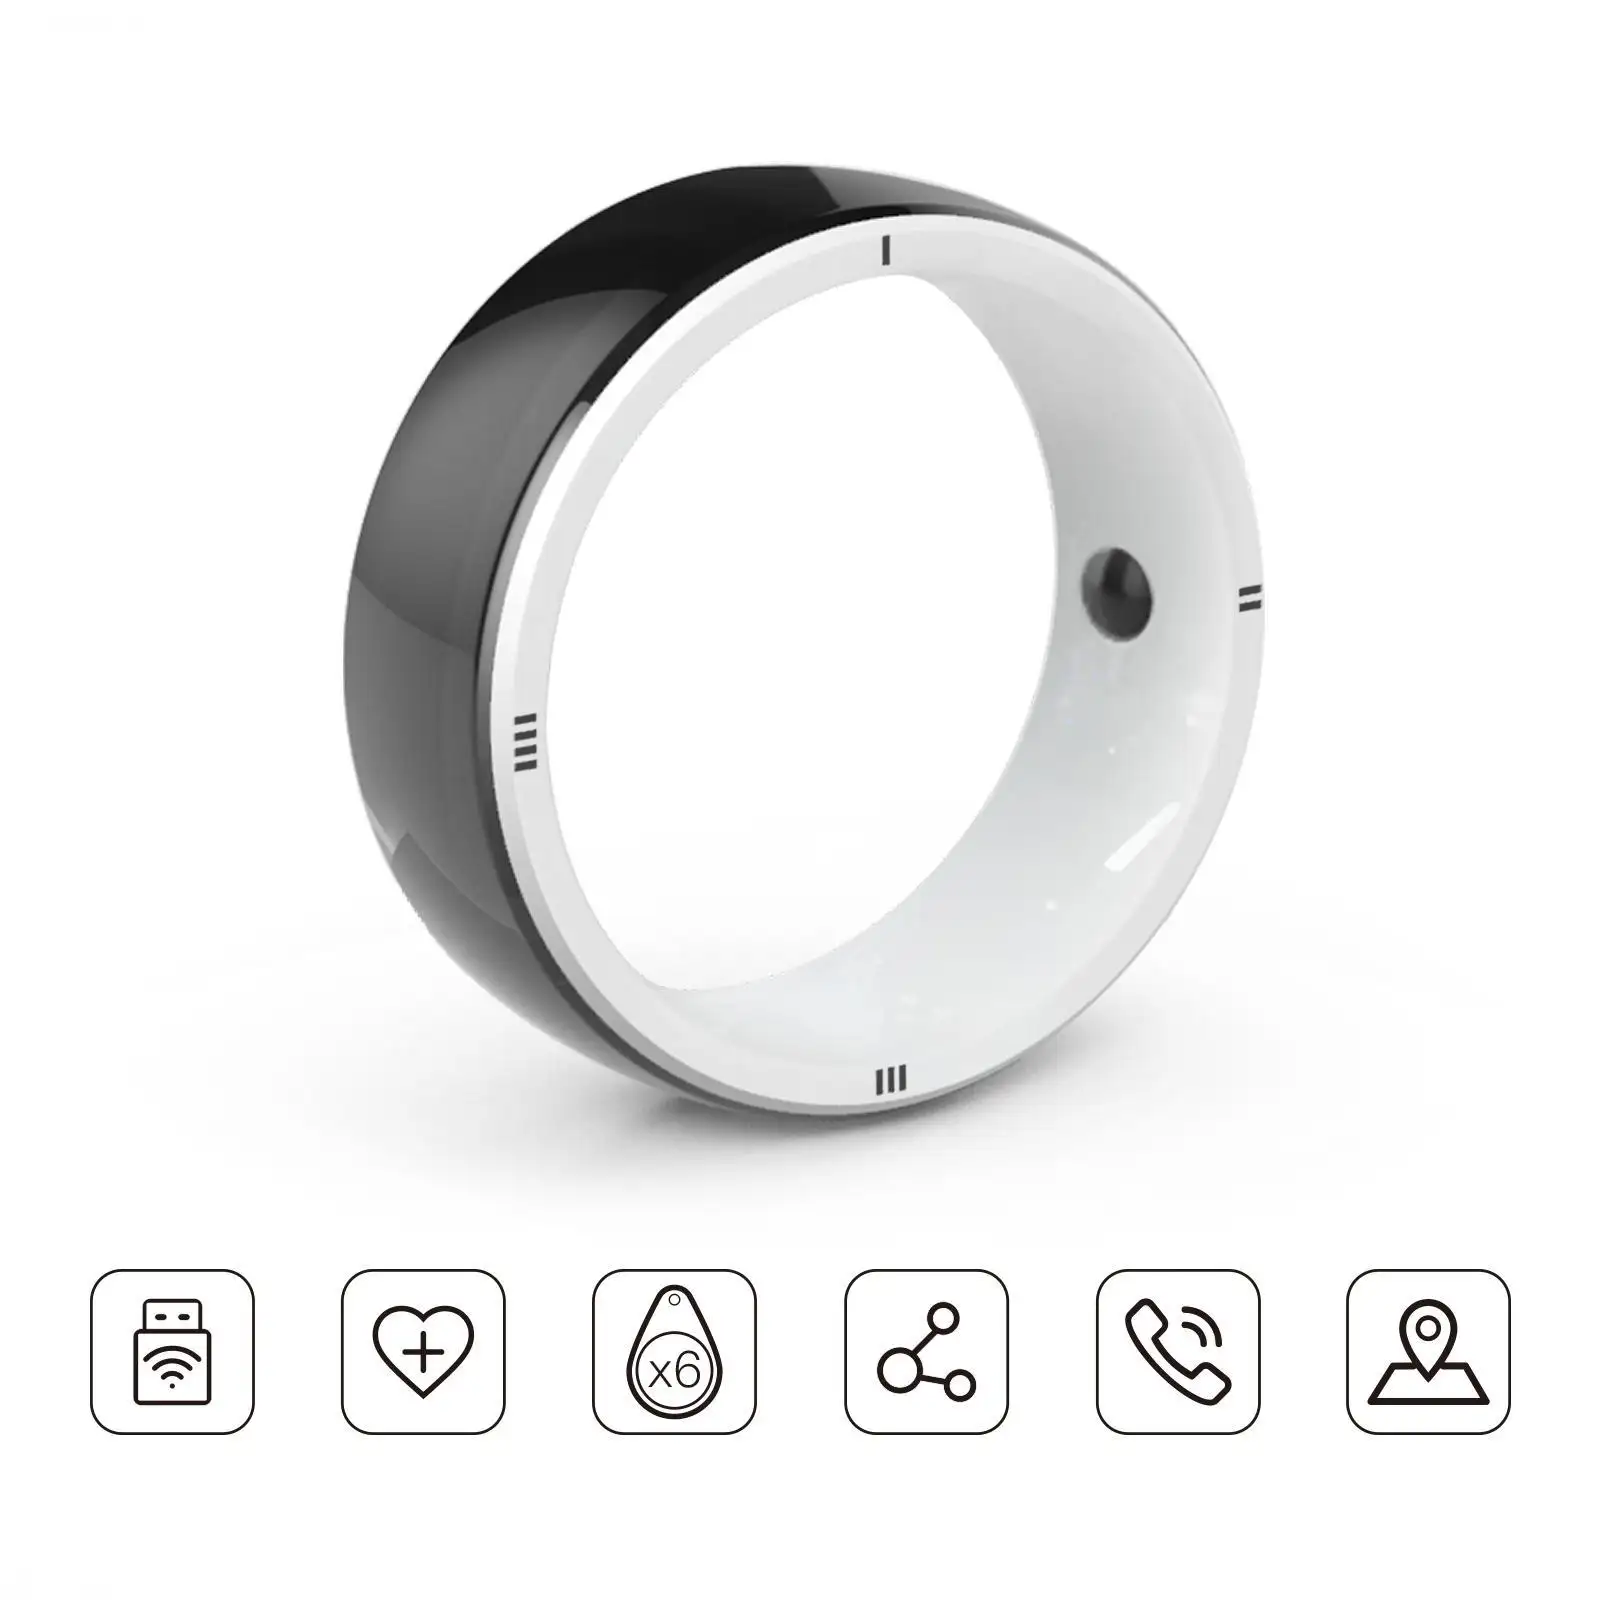 JAKCOM R5 anello intelligente nuovo anello intelligente bello rispetto al mini dispositivo di raffreddamento per laptop miglior sistema di cinturino per fotocamera tavolo da gioco mouse pad server 2012 15